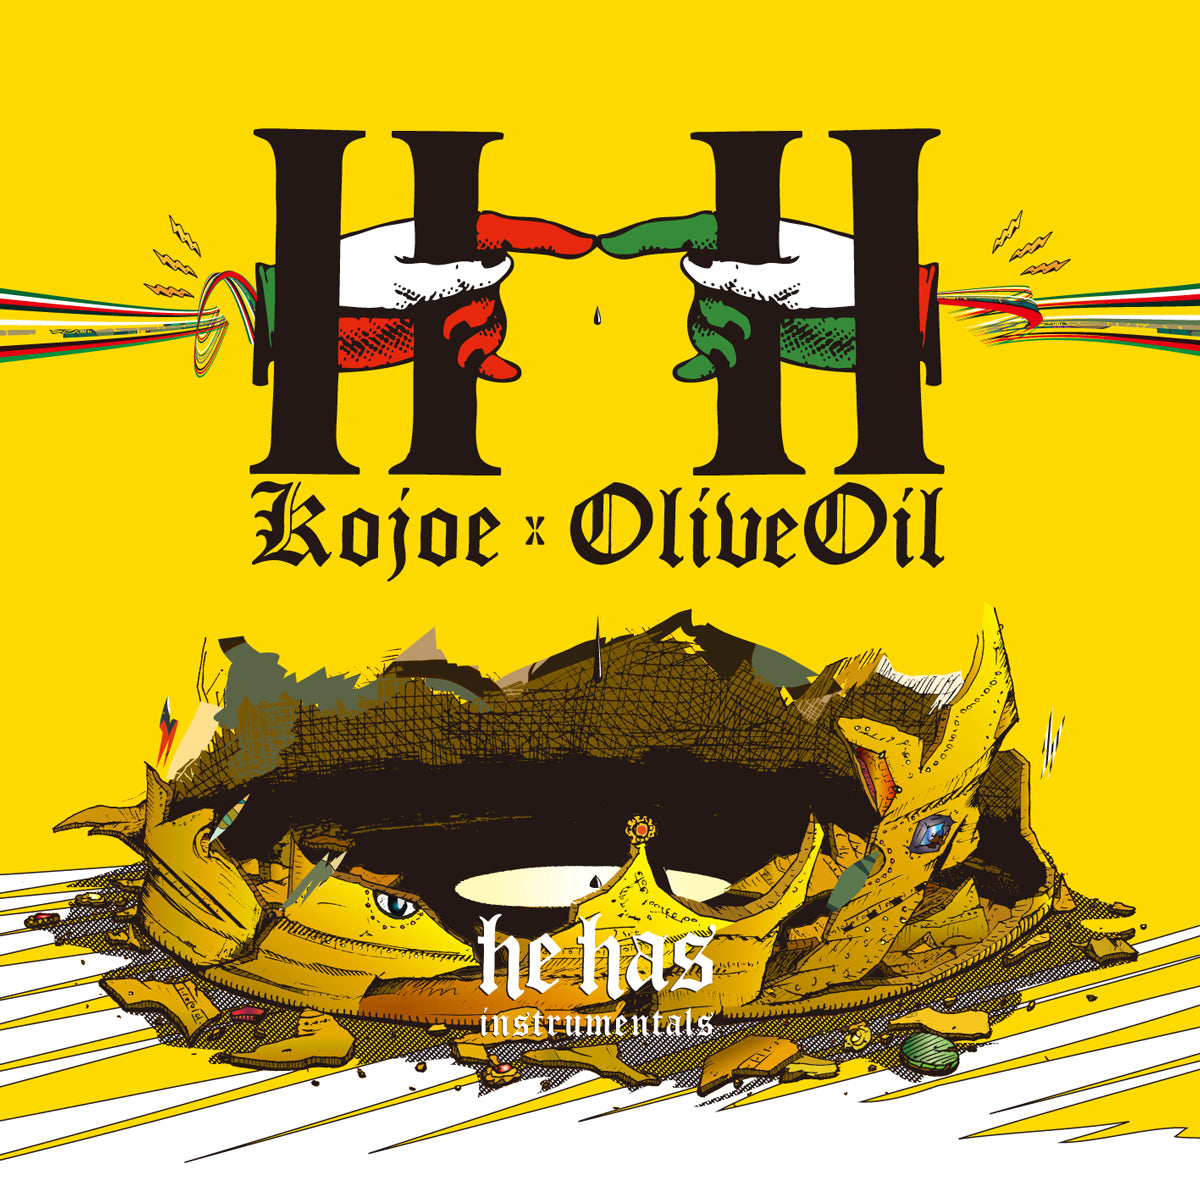 KOJOE x Olive Oil / HH INSTRUMENTALS [CD]